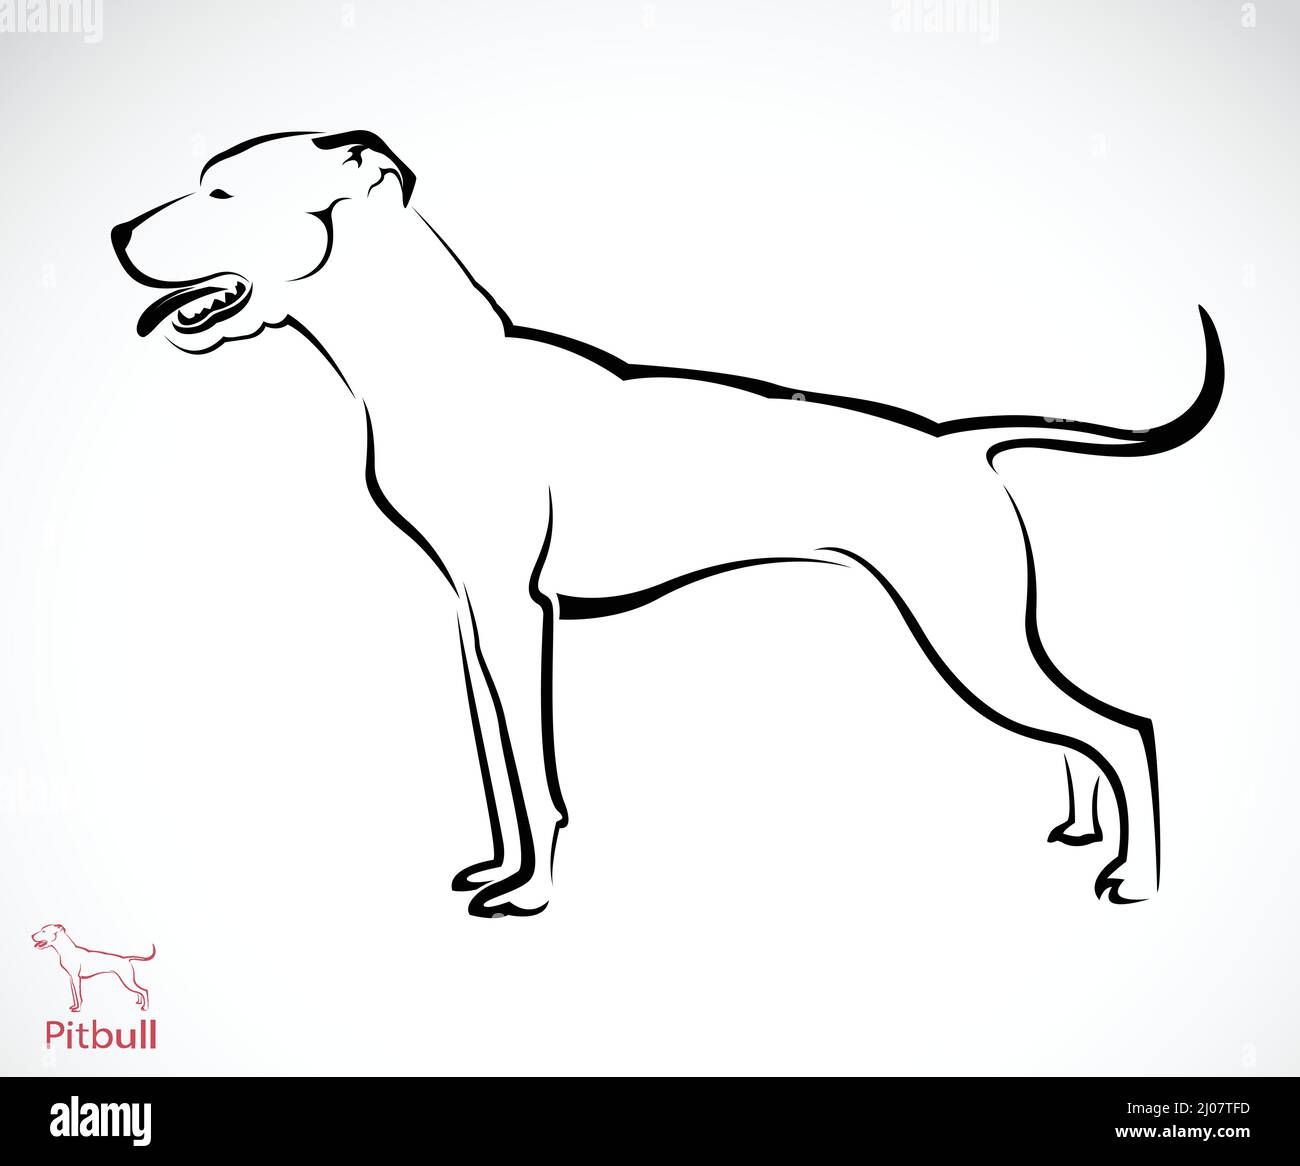 Image vectorielle du chien Pitbull sur fond blanc. Illustration vectorielle superposée facile à modifier. Illustration de Vecteur